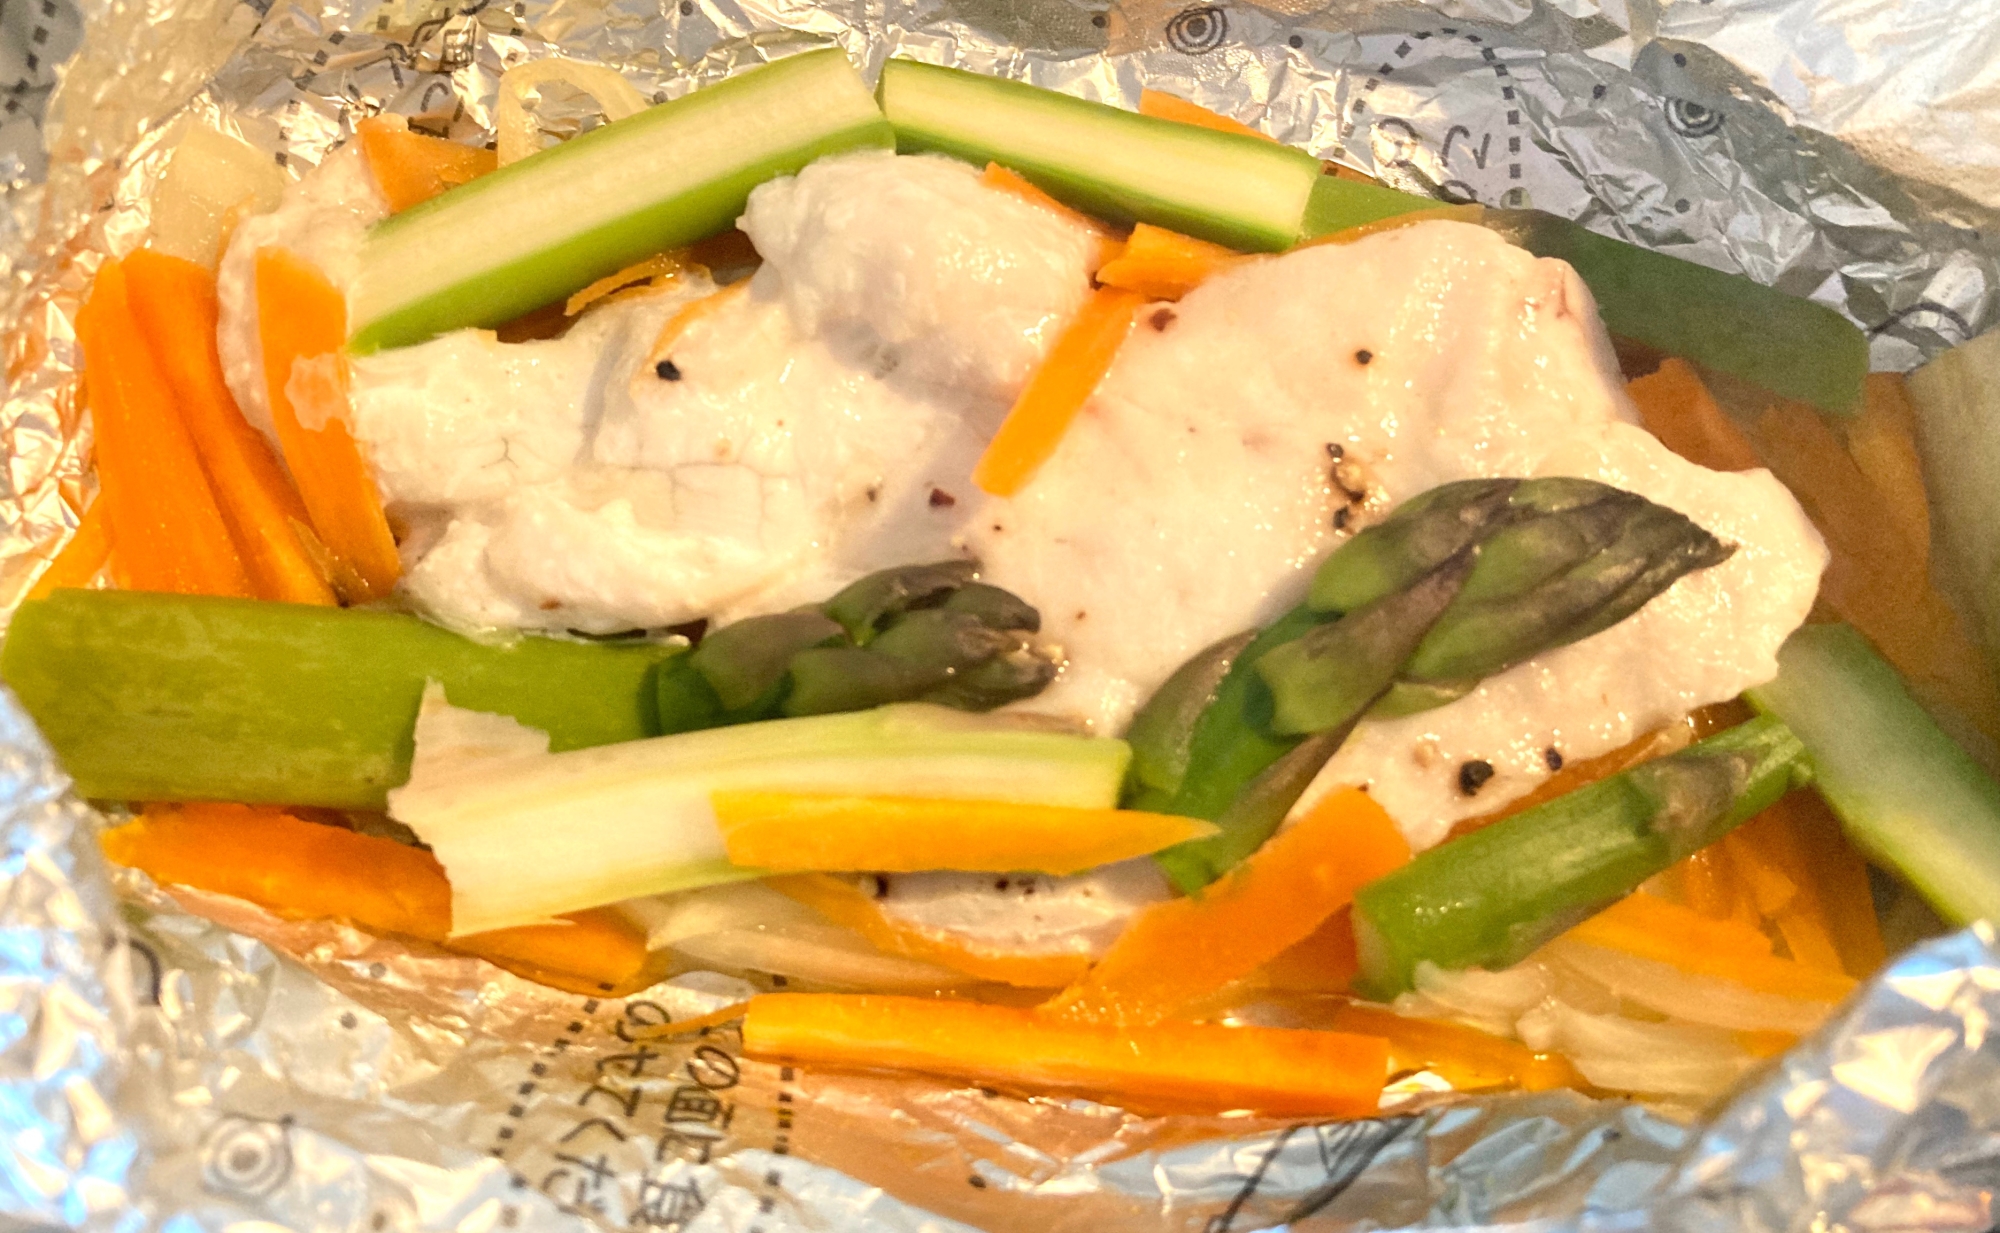 フライパンで白身魚と野菜の簡単ホイル焼き